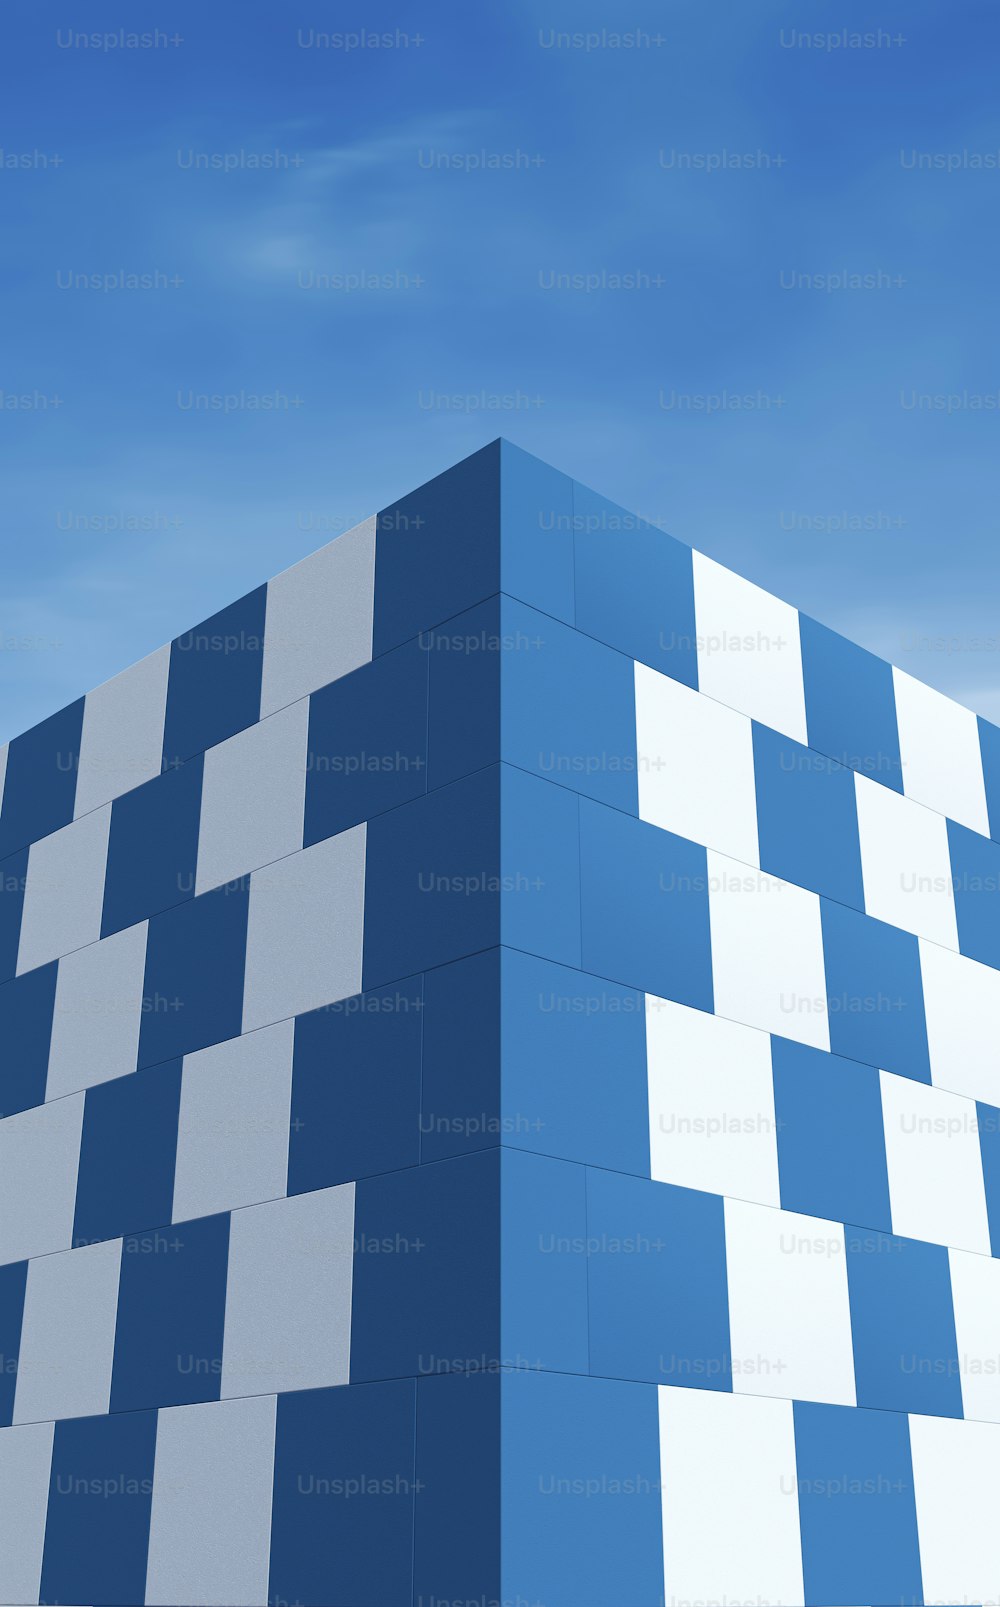 푸른 하늘 아래 앉아있는 파란색과 흰색의 큰 건물